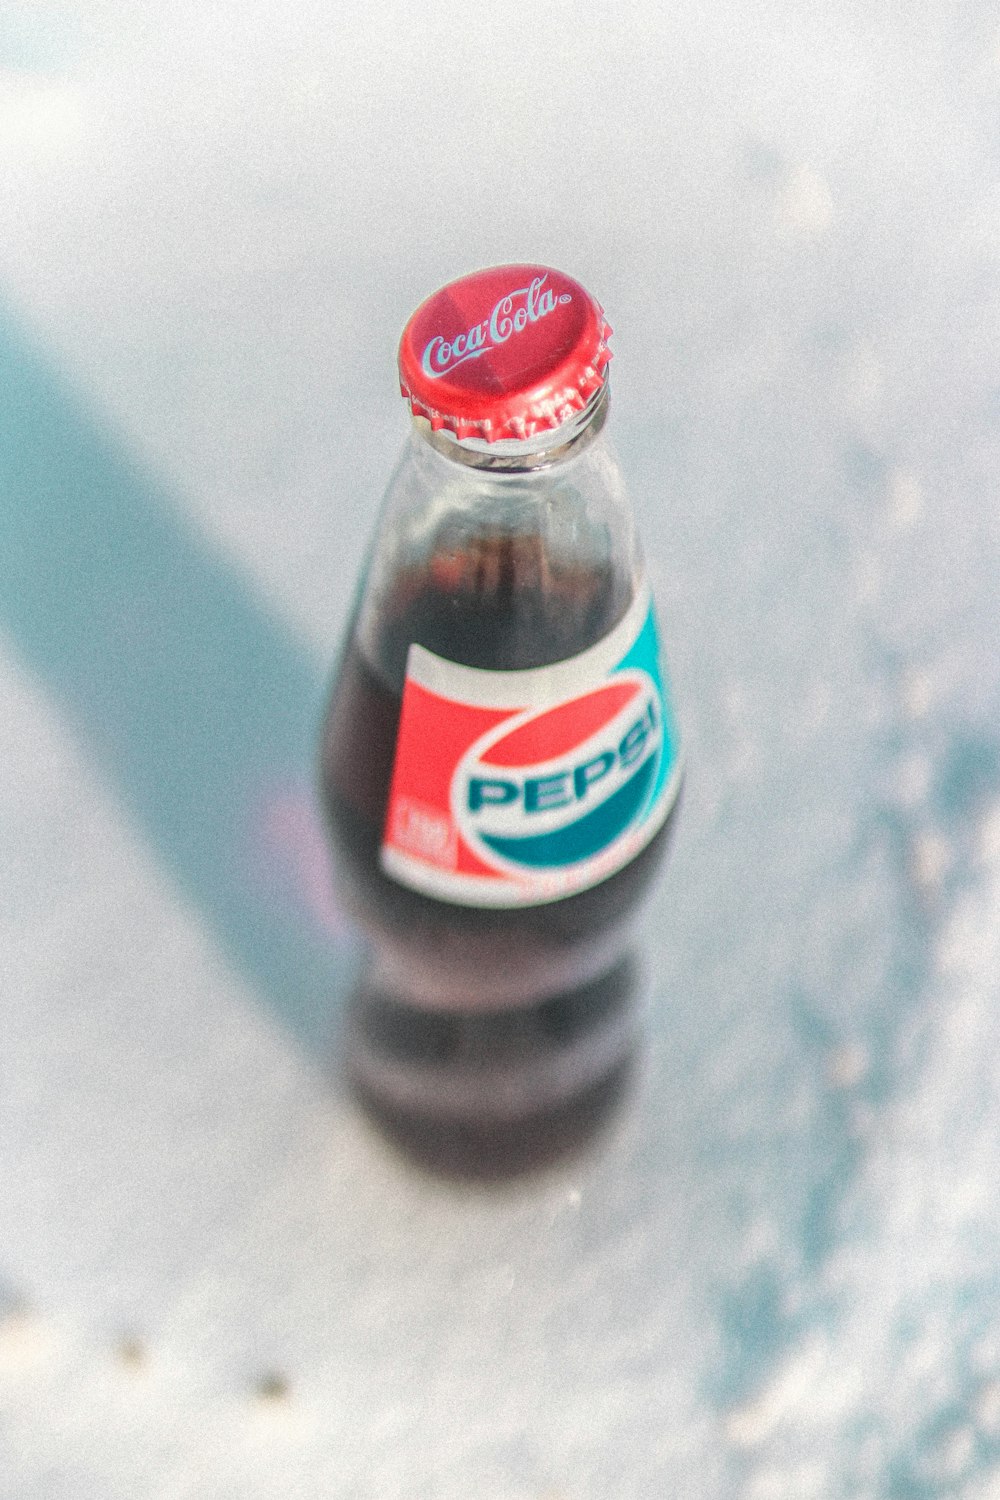 pepsi bottle with coca-cola cap